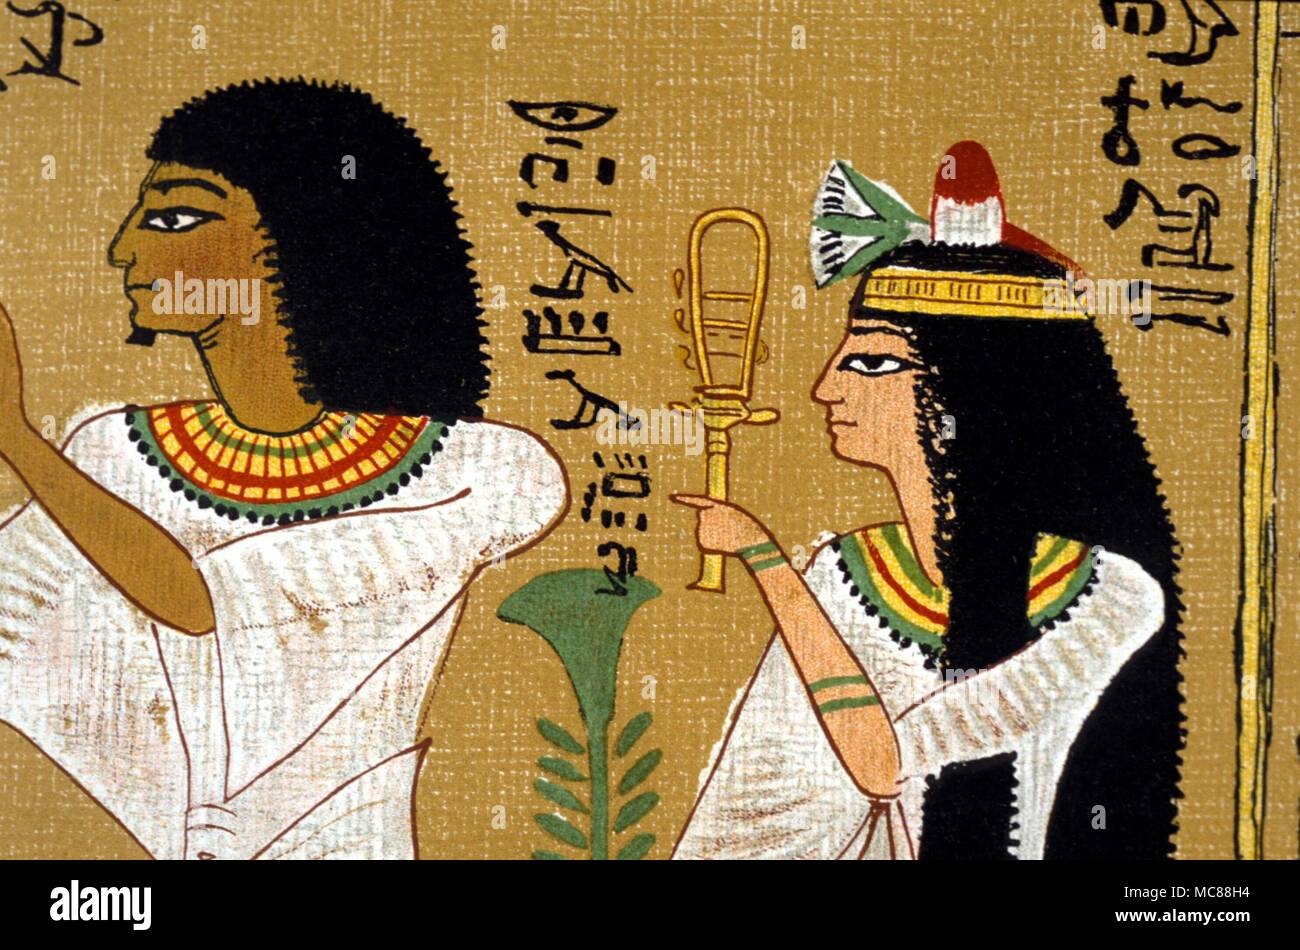 Mito egiziano - SISTRUM il defunto Hunefer con mia moglie (tenendo il sacro sistrum. Entrambi stanno in adorazione delle divinità. Copia litografica del XIX secolo - Libro Egiziano dei Morti. Foto Stock